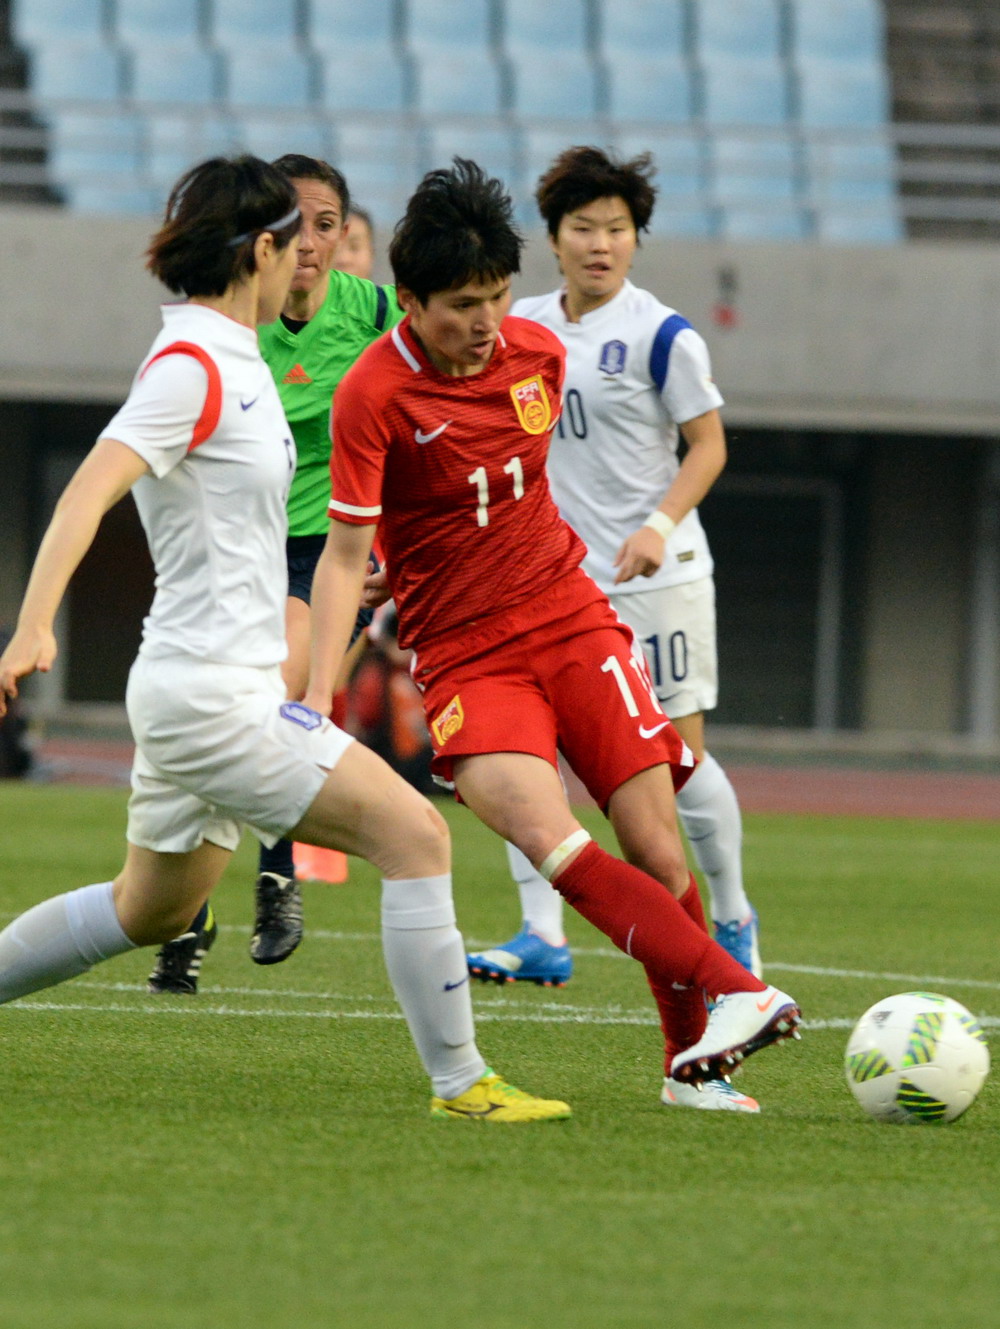 图为2016年3月7日,中国女足队员王珊珊(前右)